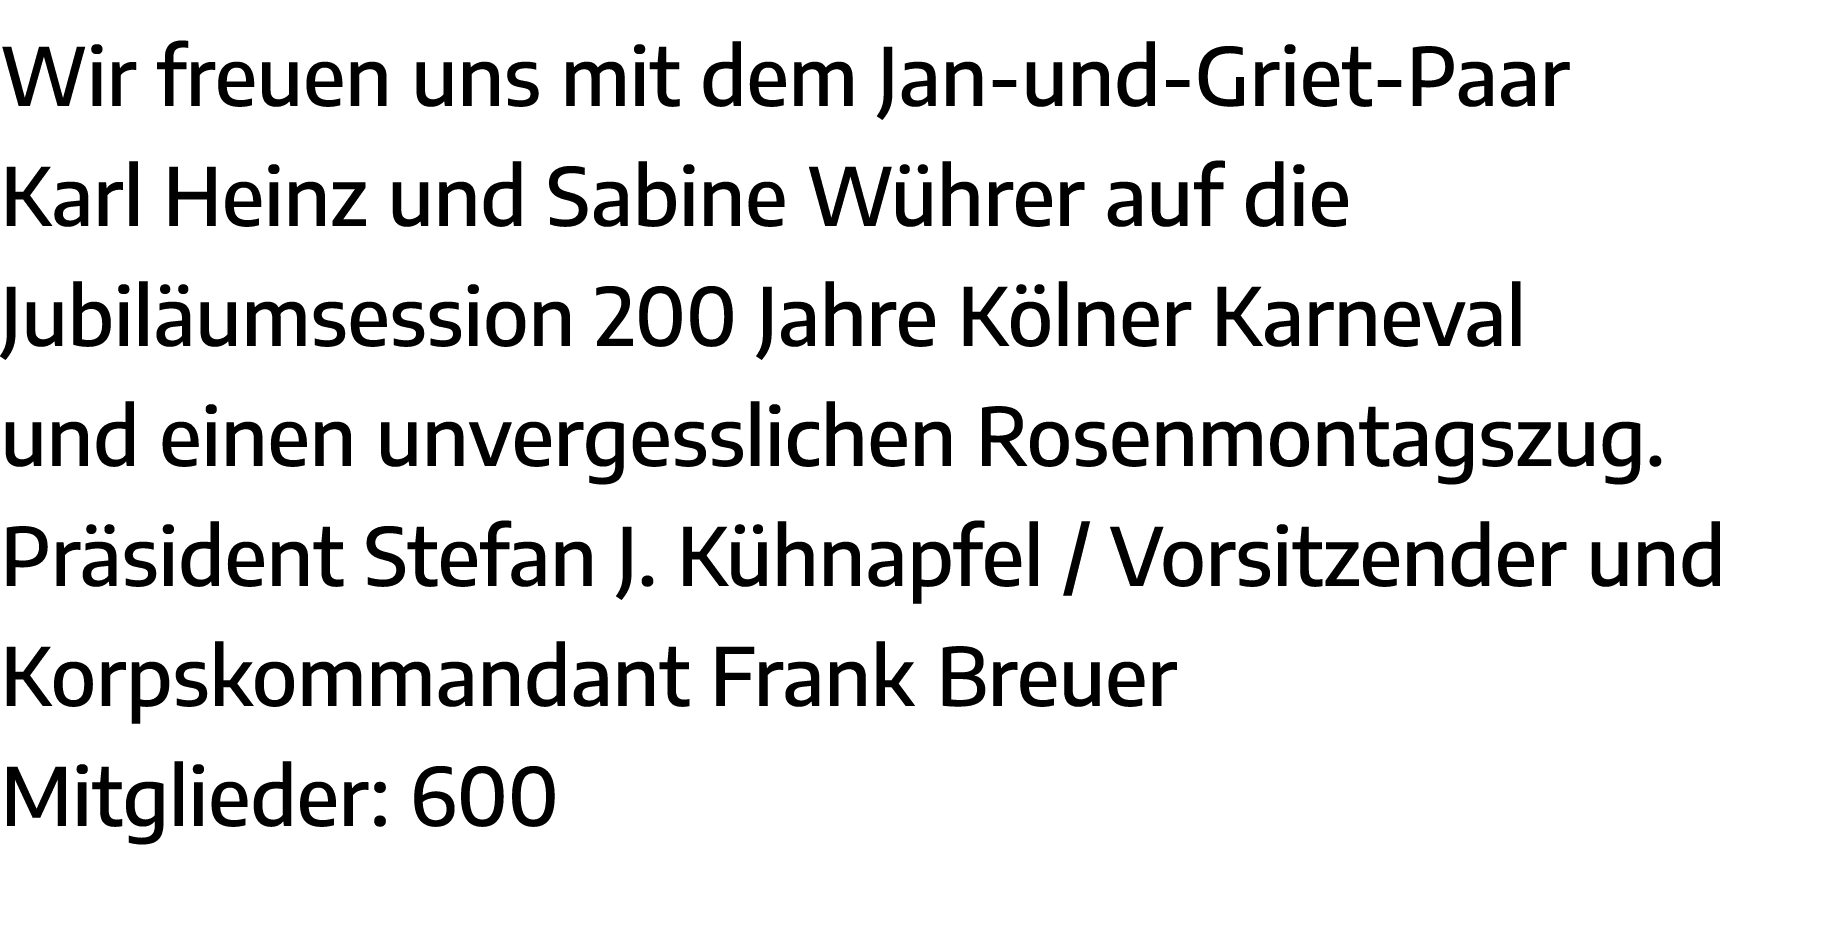 Wir freuen uns mit dem Jan-und-Griet-Paar Karl Heinz und Sabine Wührer auf die Jubiläumsession 200 Jahre Kölner Karne   